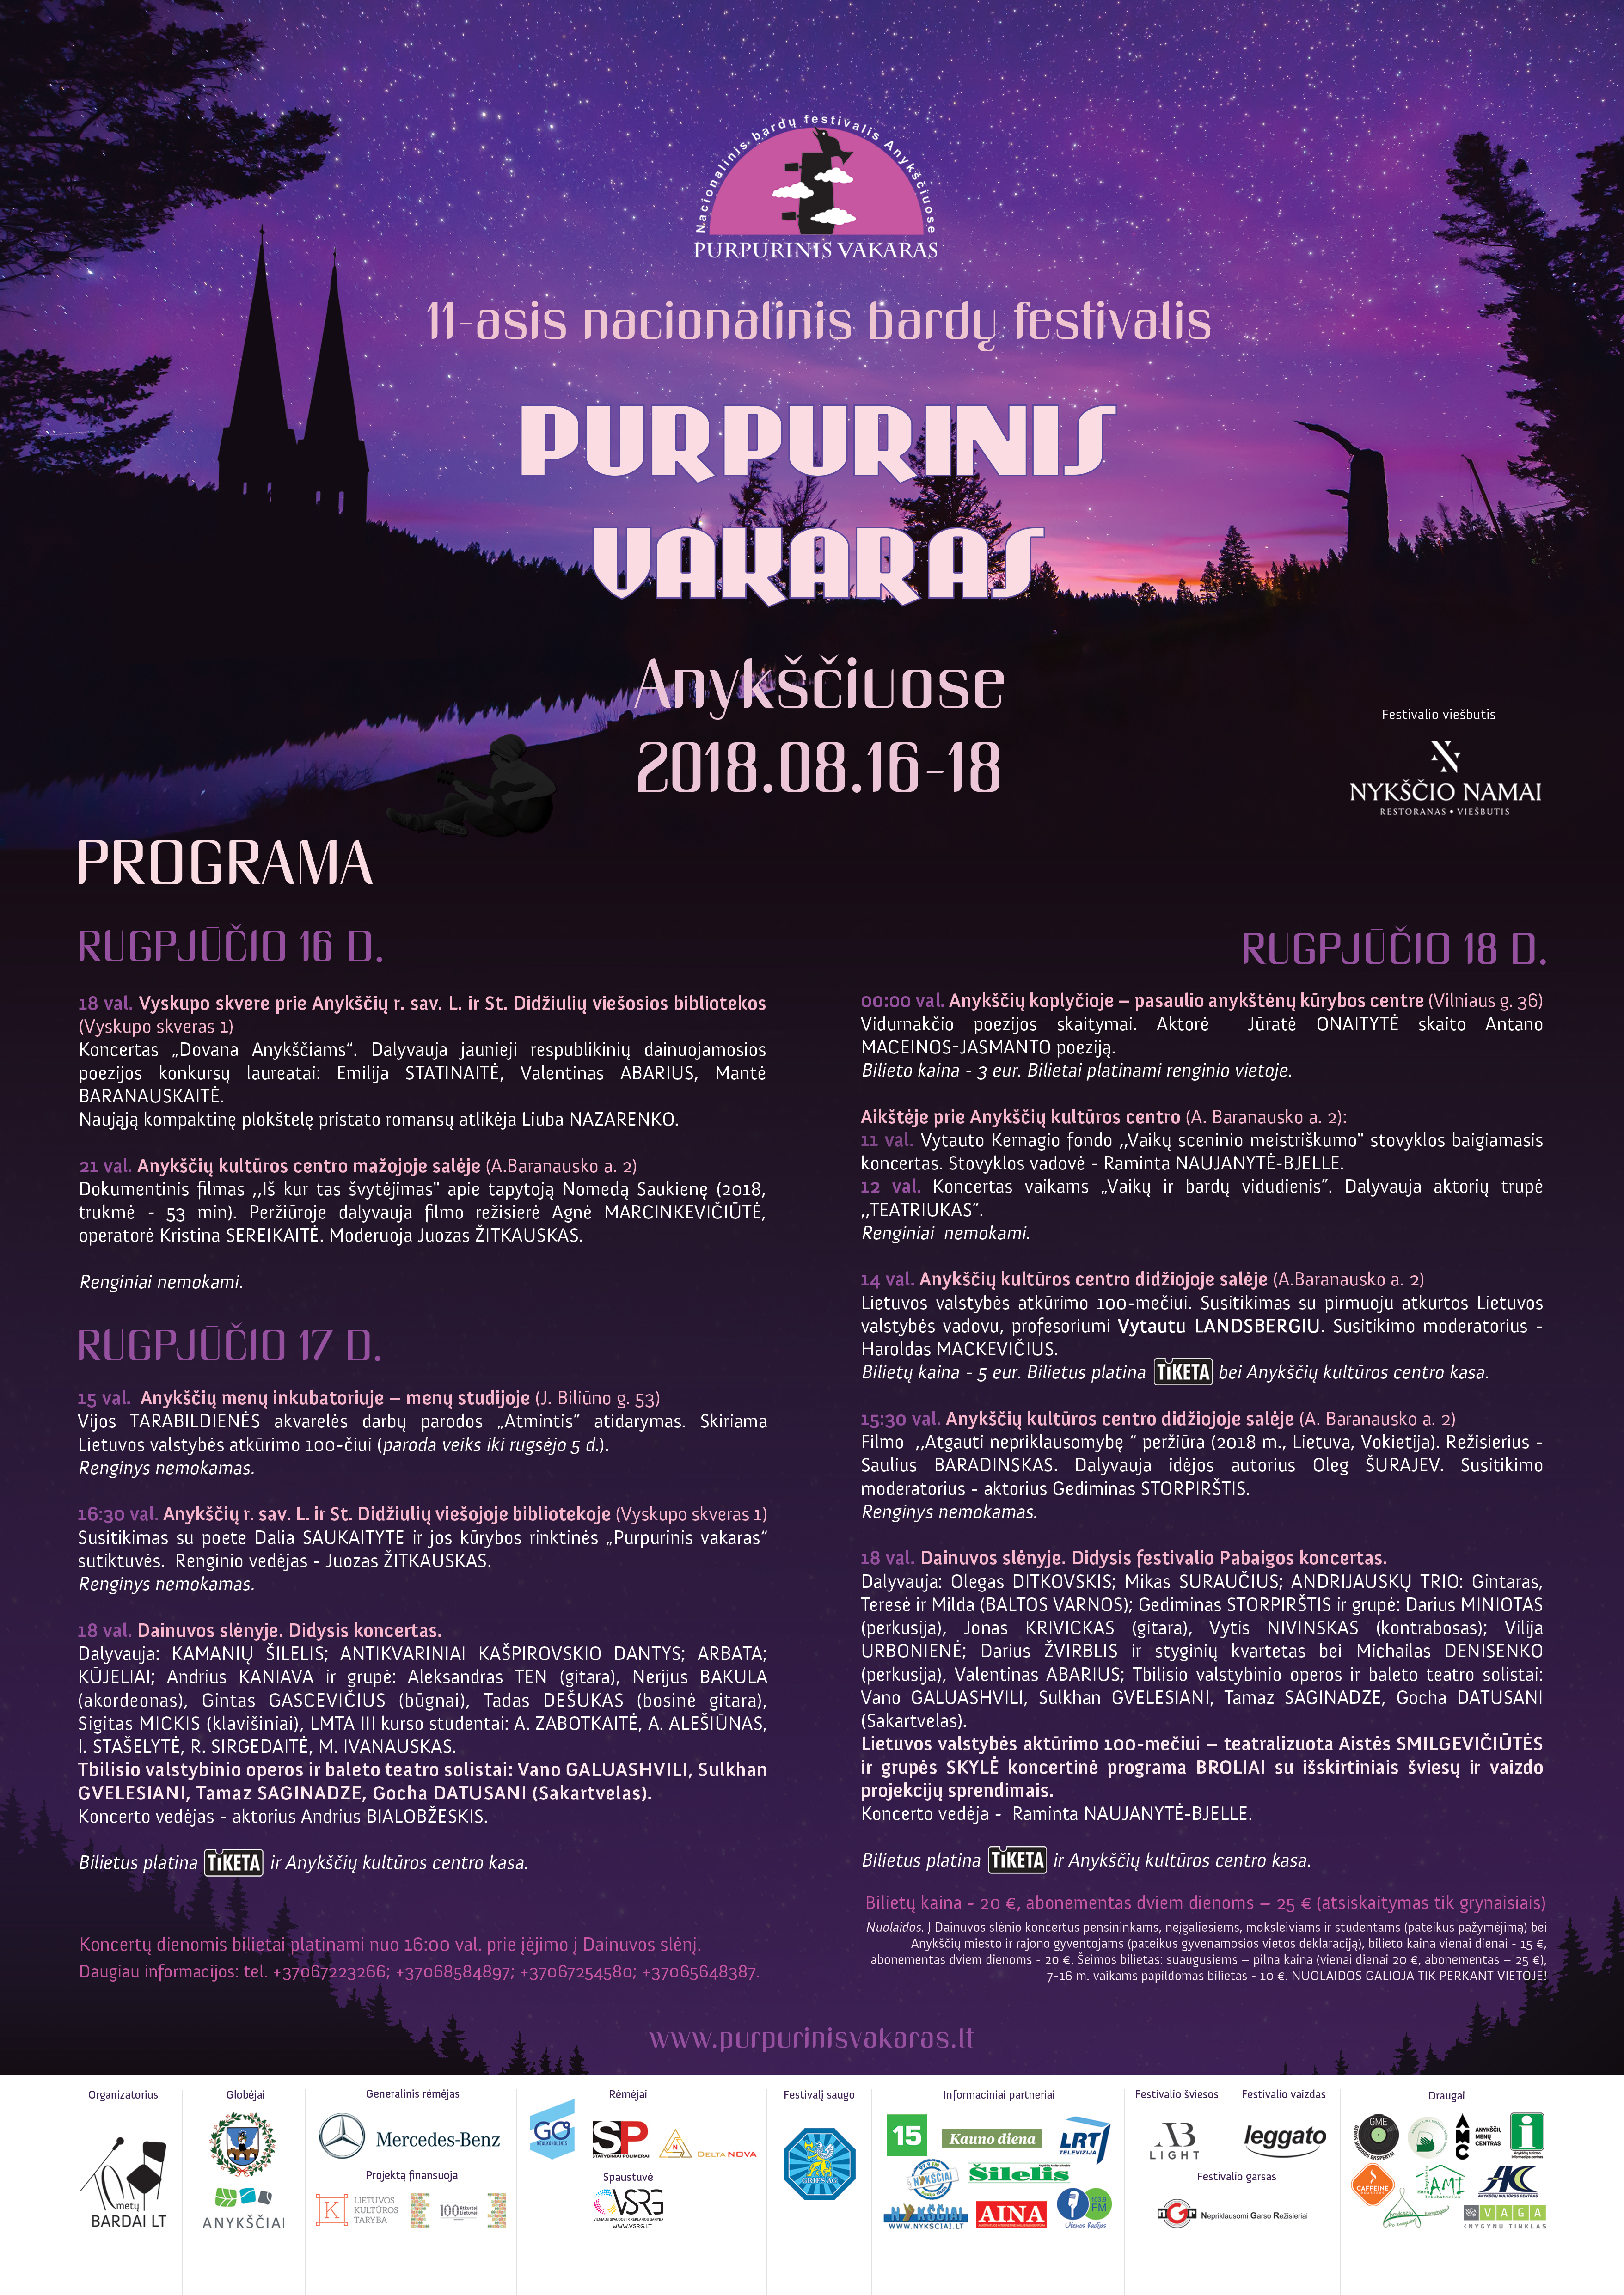 Purpurinis-vakaras_2018-programa-(large)